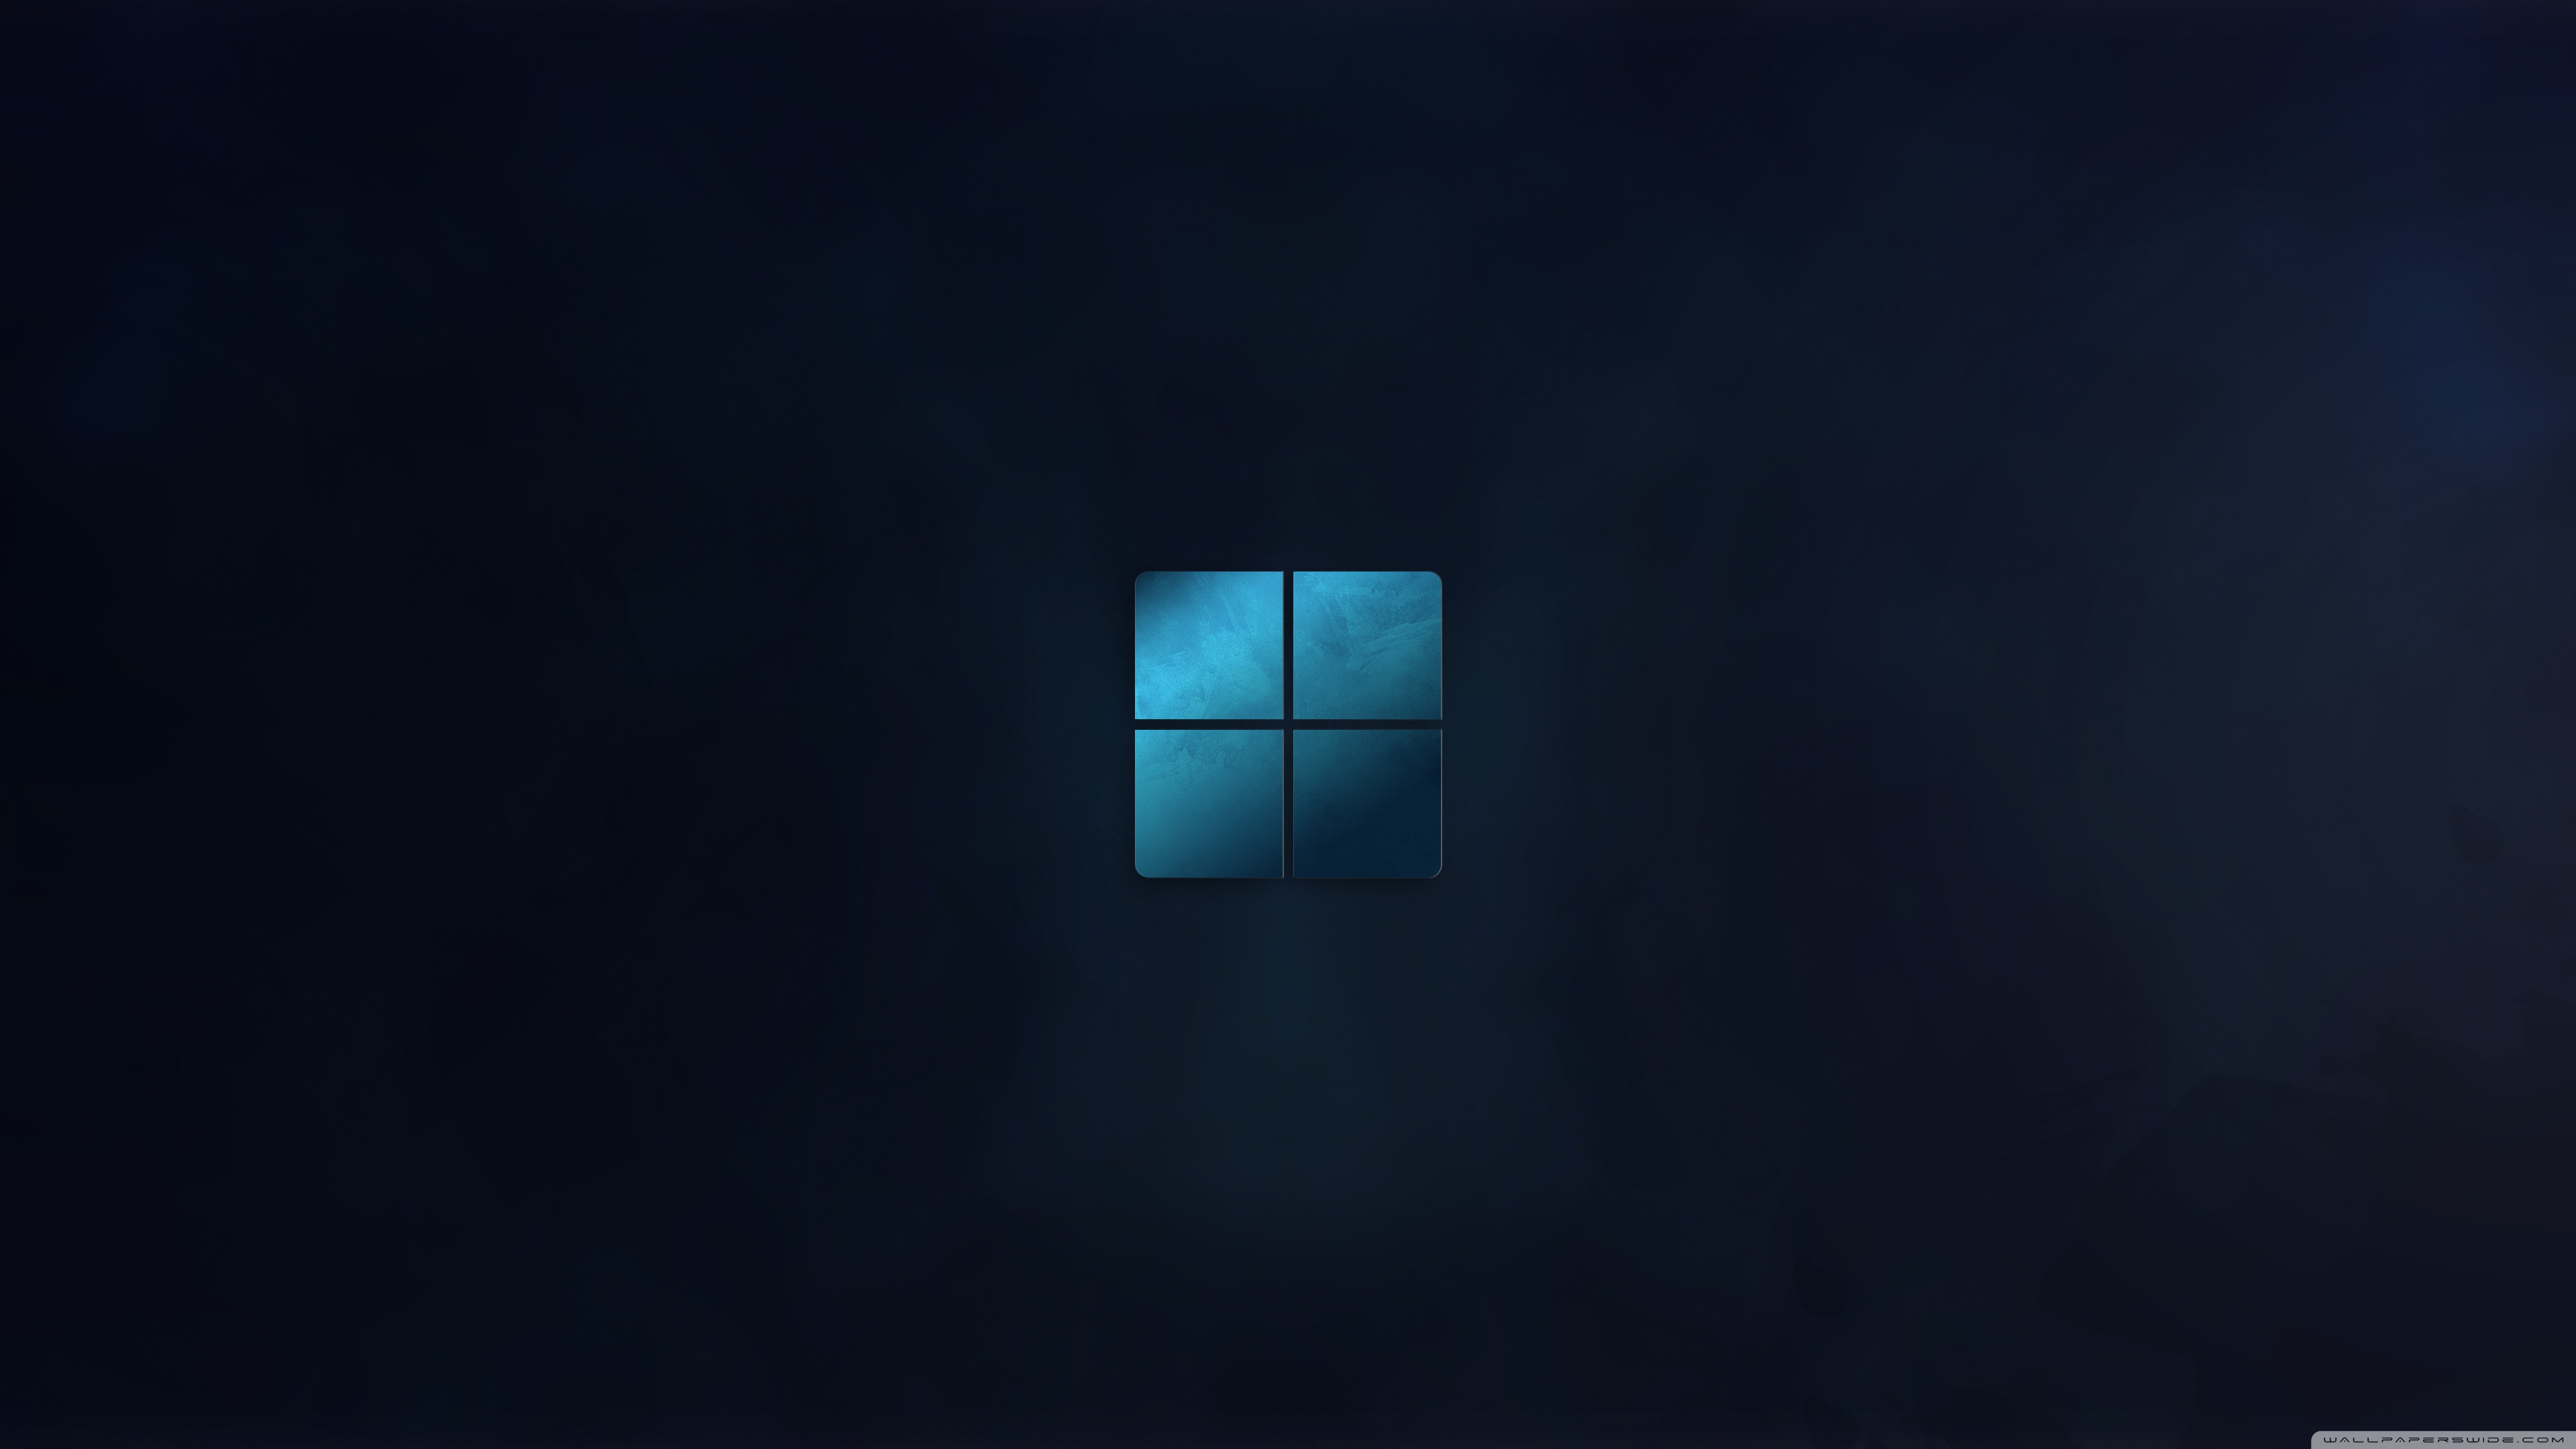 Windows 11 HD wallpapers | Pxfuel